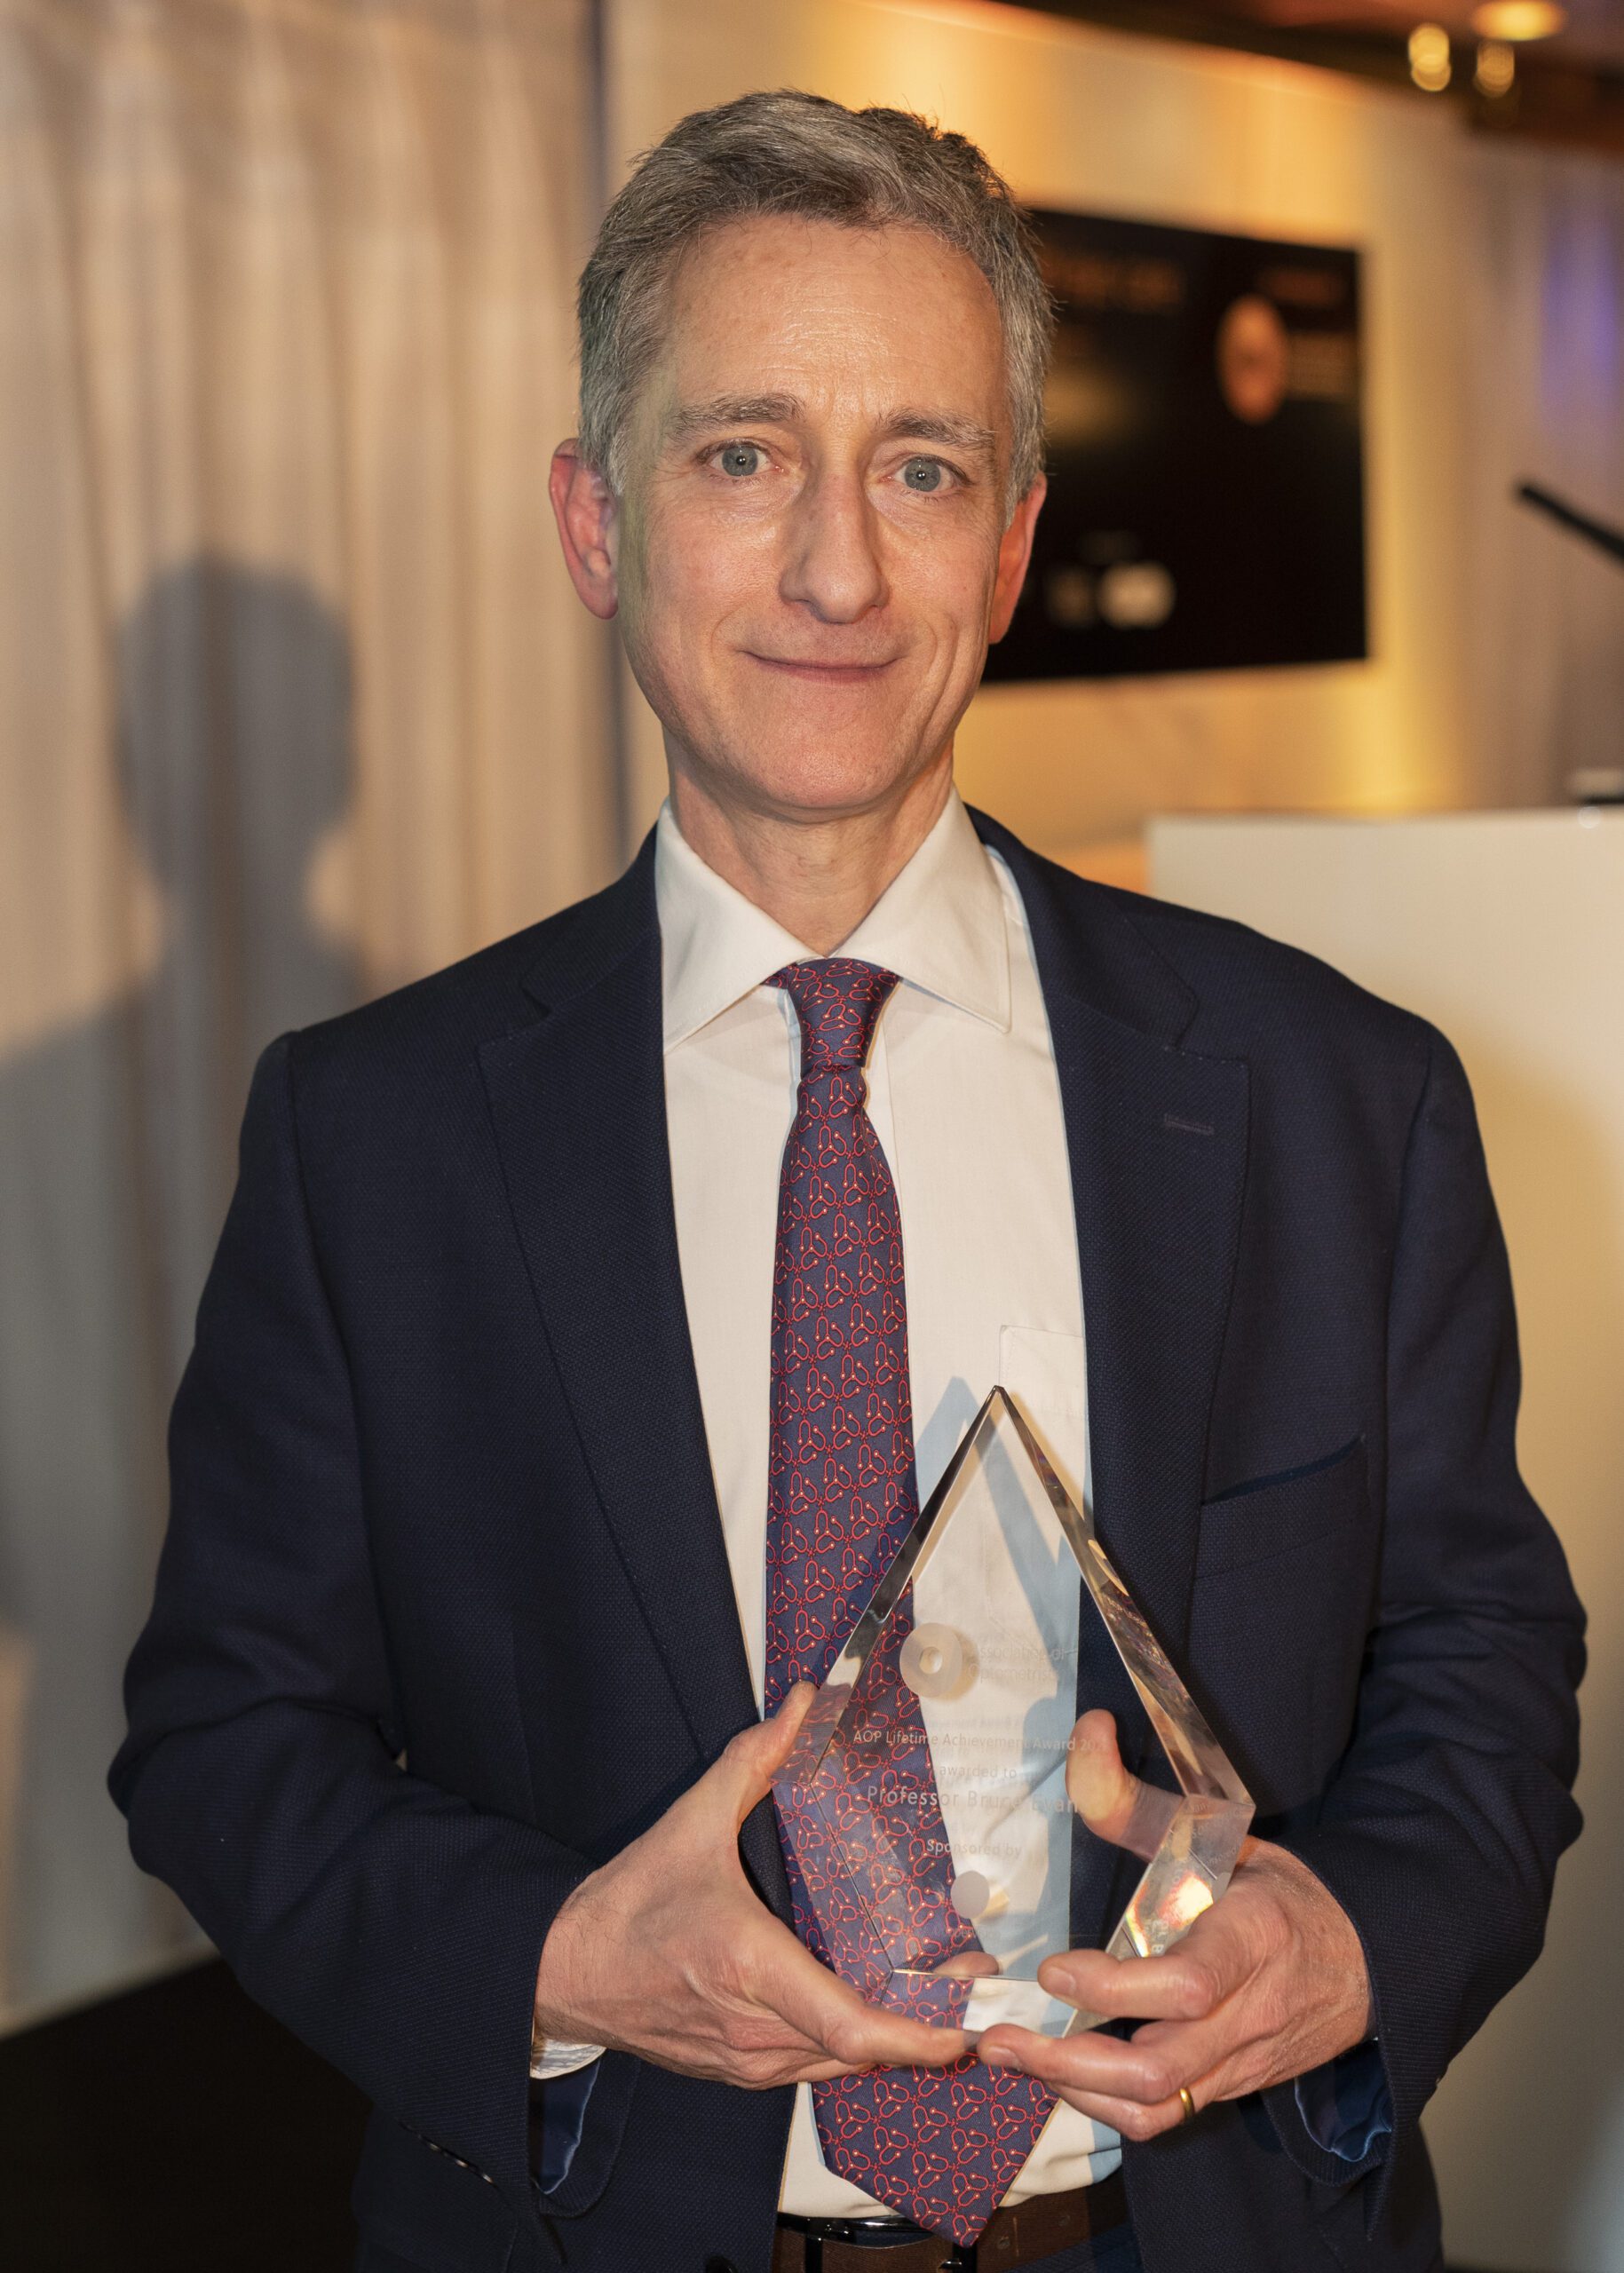 Professor Bruce Evans won the AOP Lifetime Achievement Award